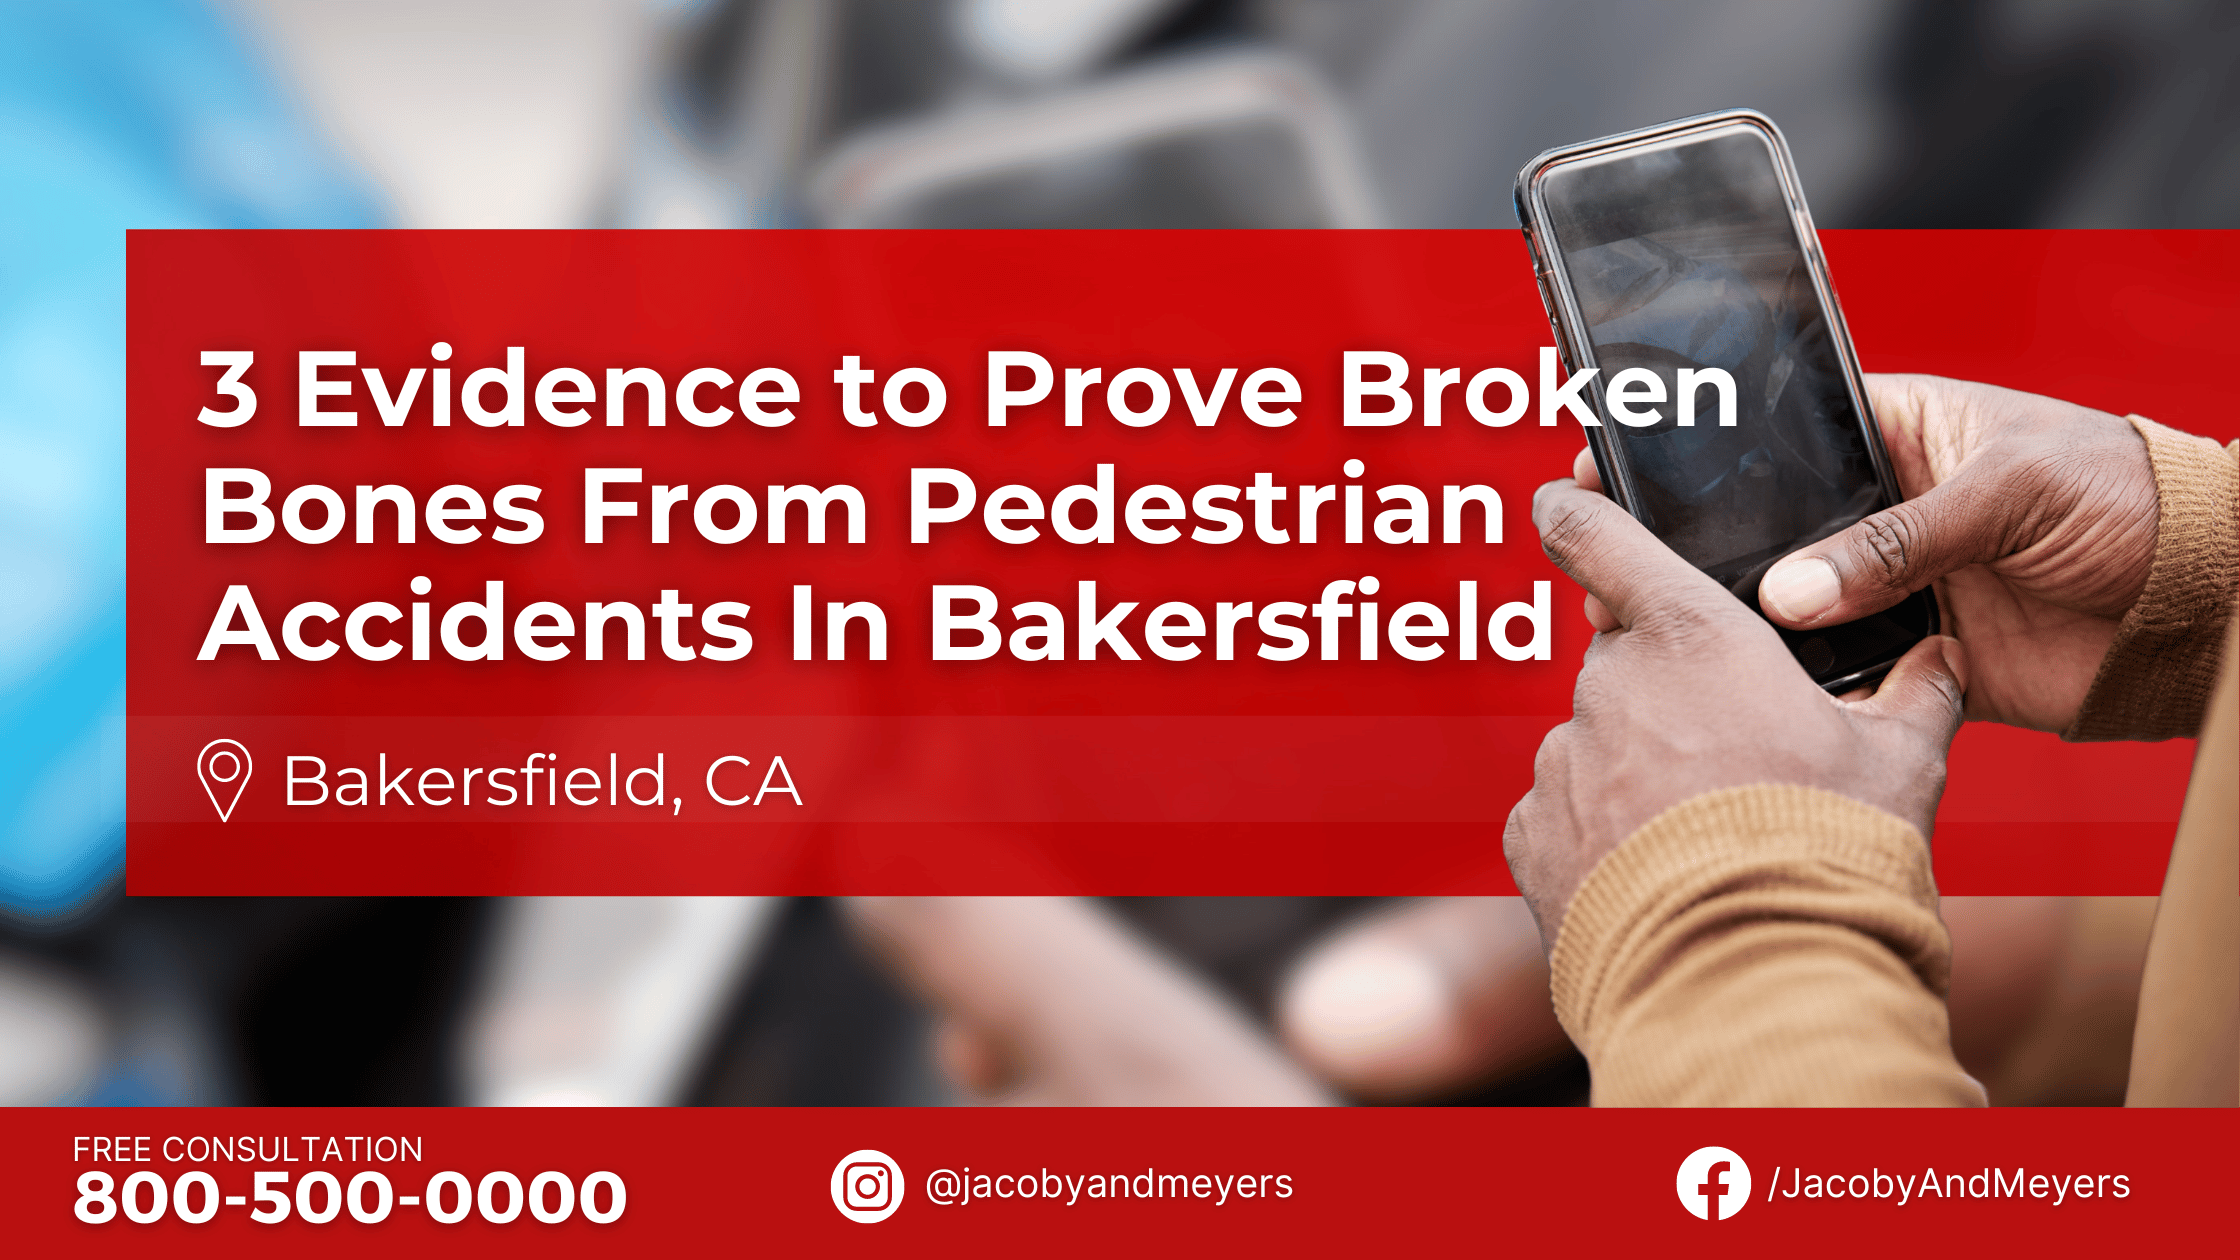 3 Evidence to Prove Broken Bones From Pedestrian Accidents In Bakersfield